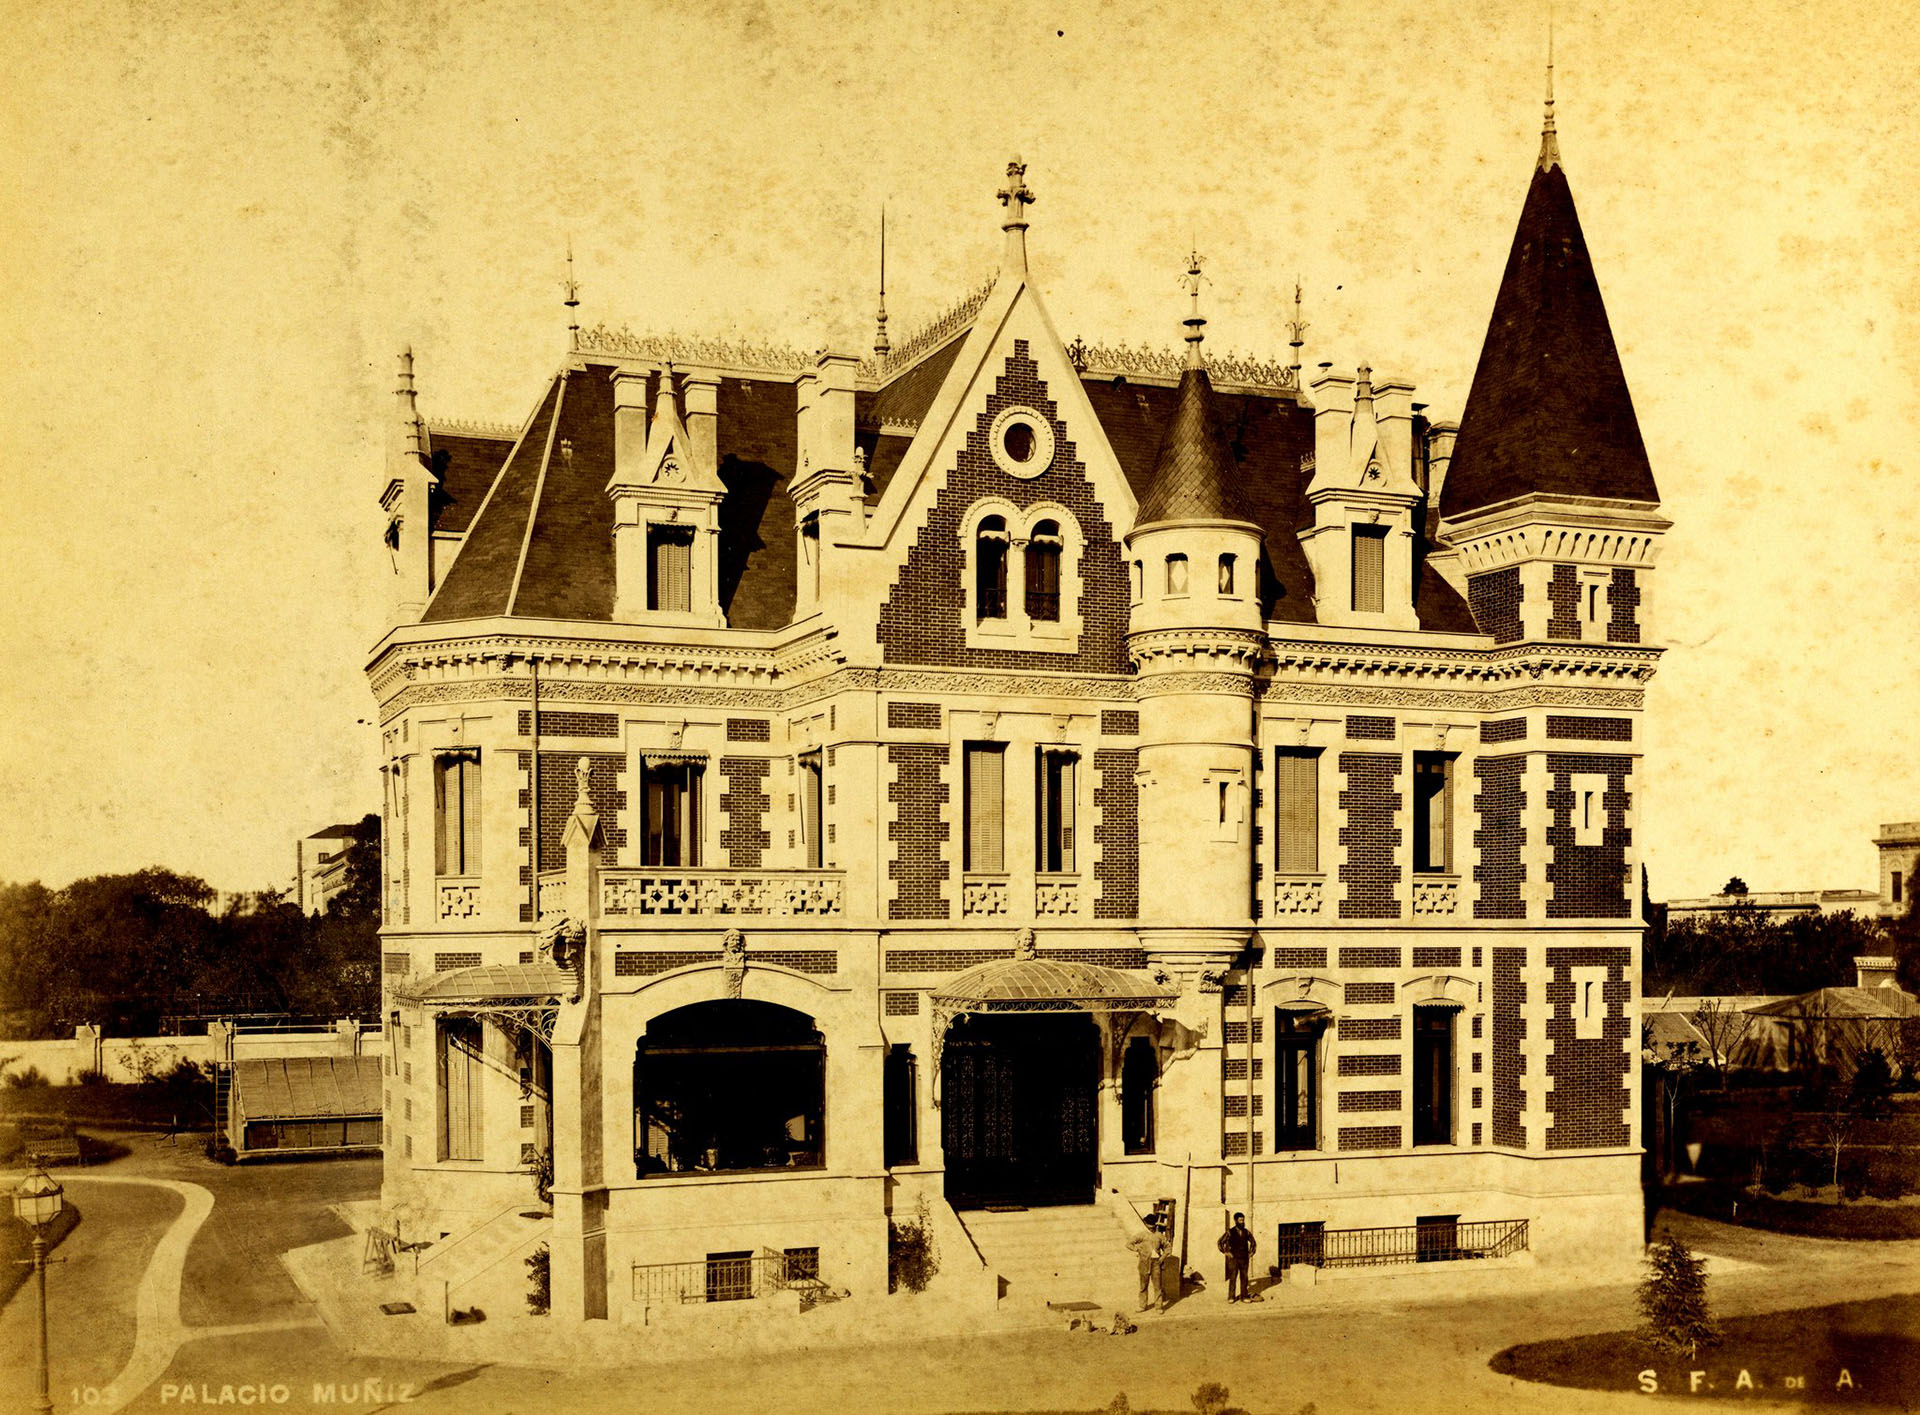 El Palacio Muñiz tenía su entrada en donde hoy sería la mitad de cuadra de la calle José Mármol, entre la avenida Rivadavia e Hipólito Yrigoyen, a 500 metros del Parque Rivadavia